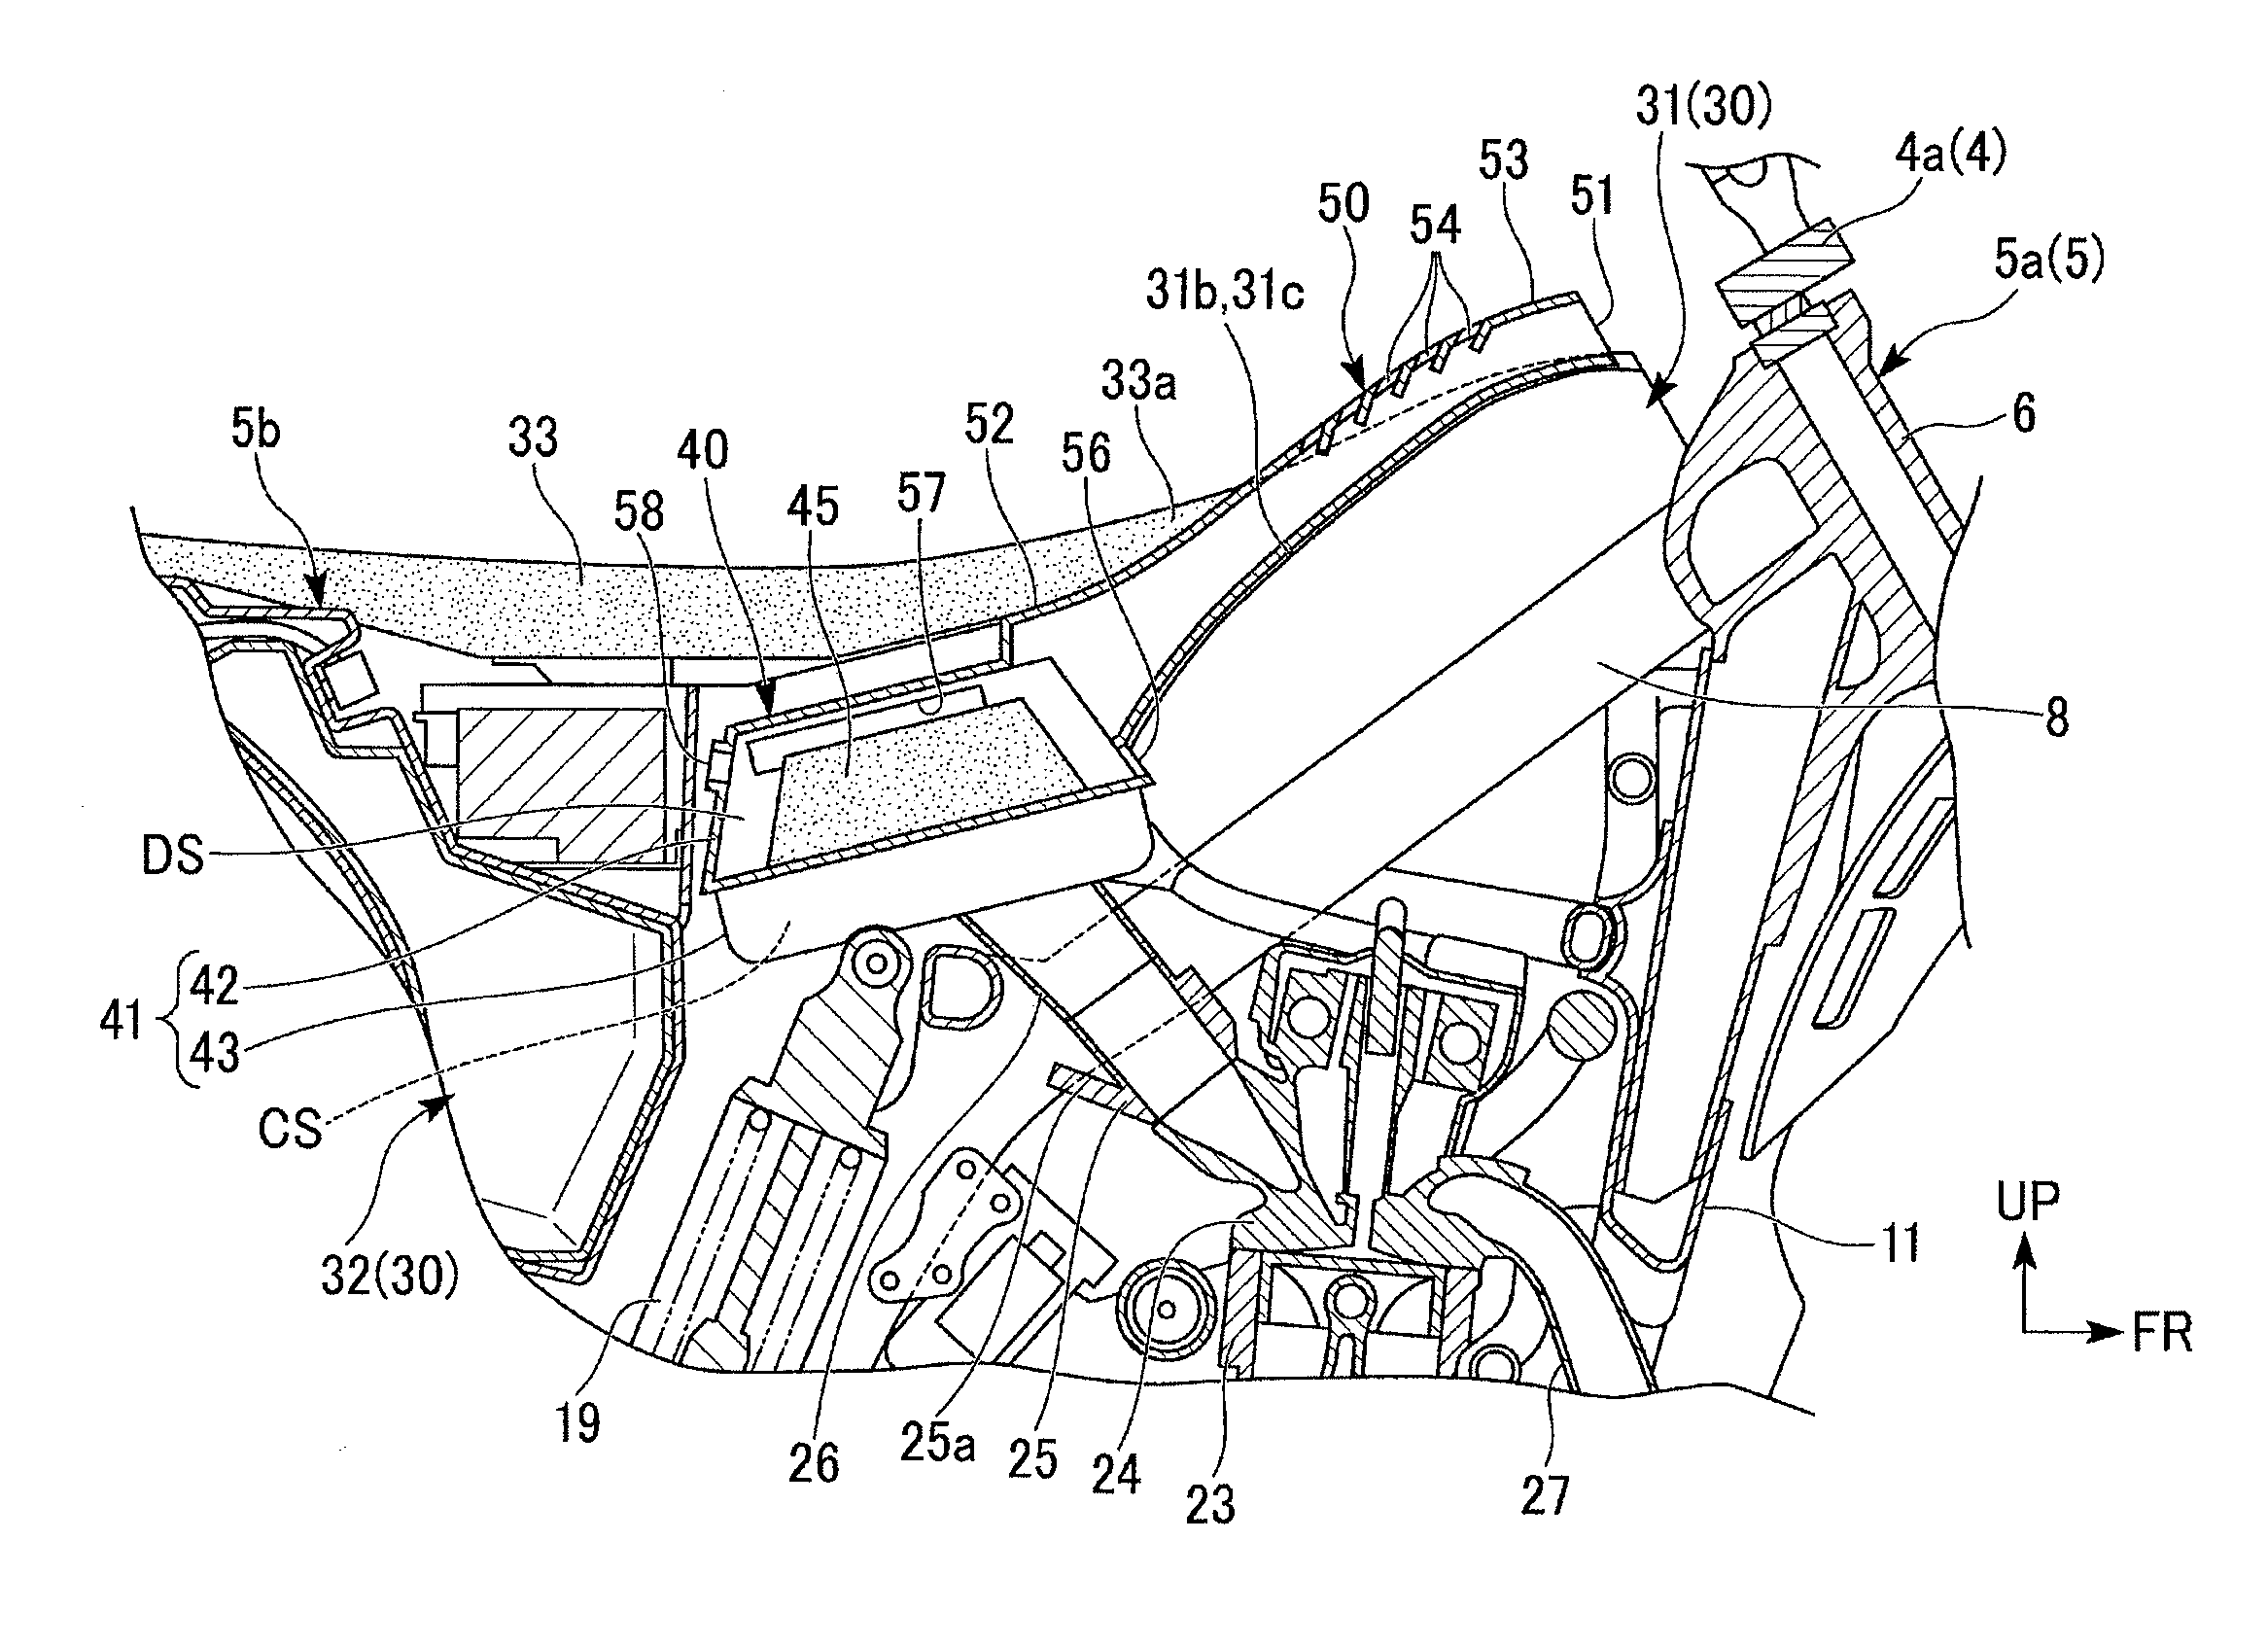 Air intake system of saddle-ride type vehicle